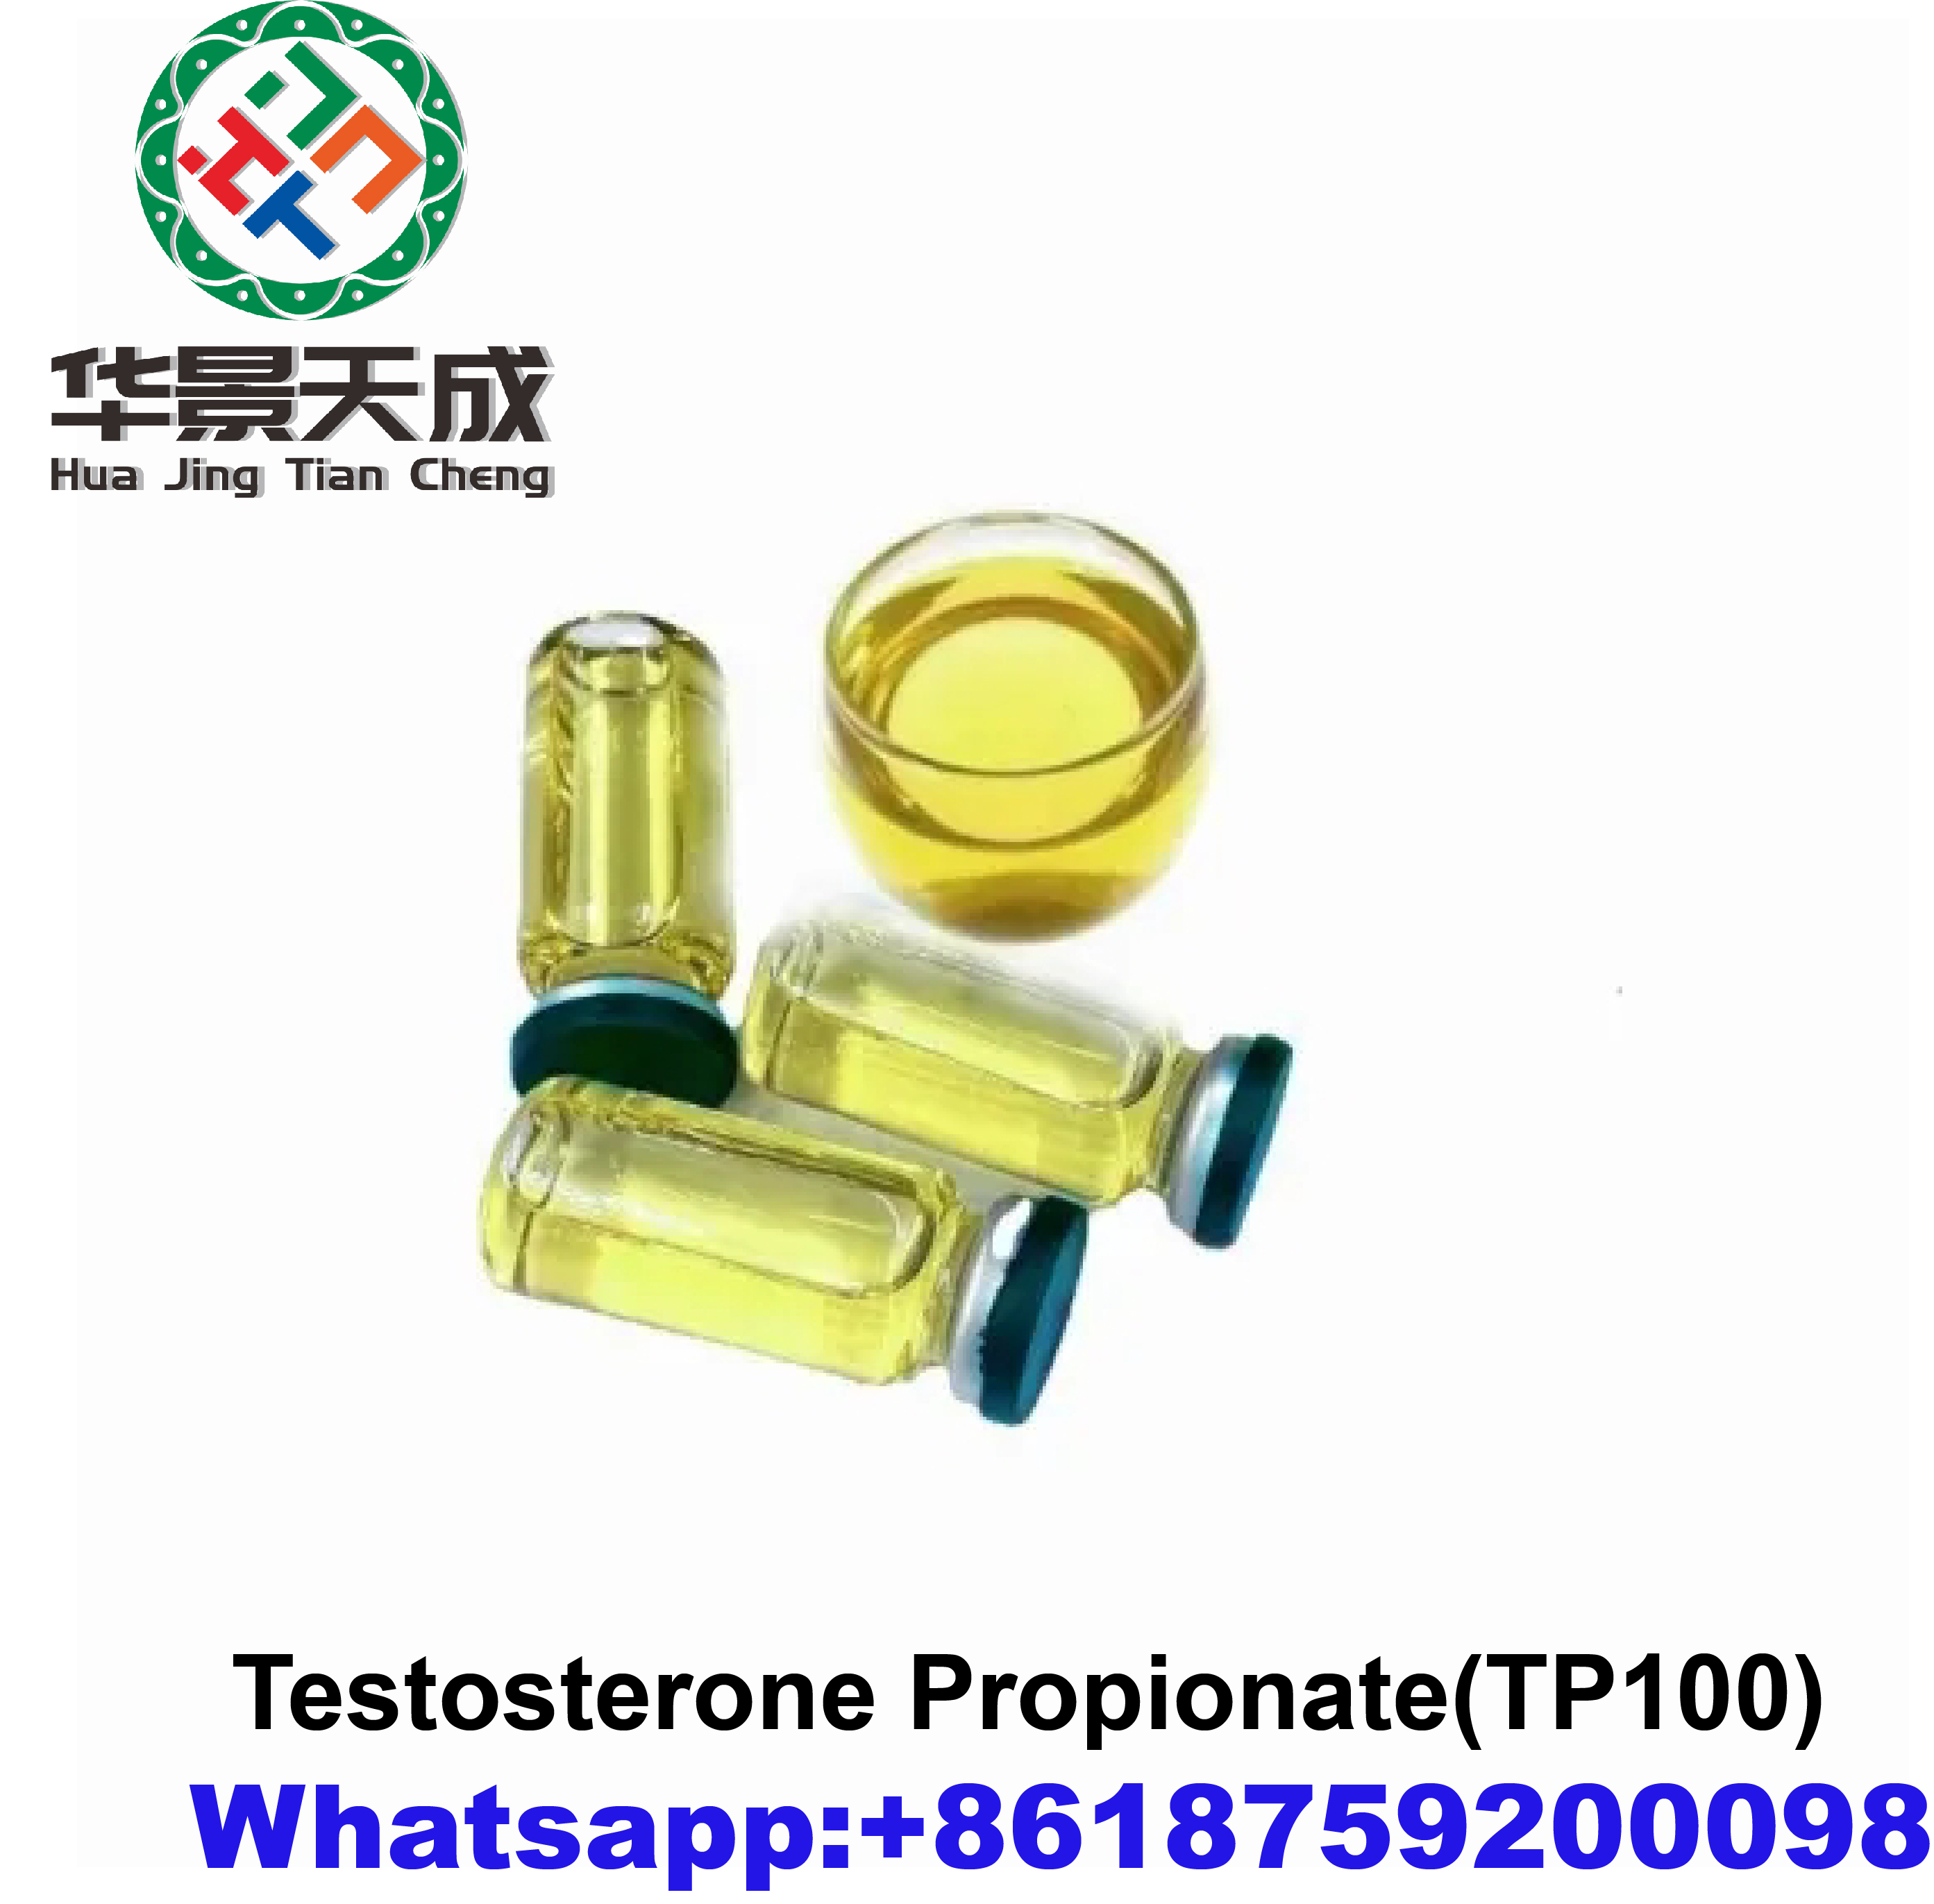 Testosterone Propionate(TP100)